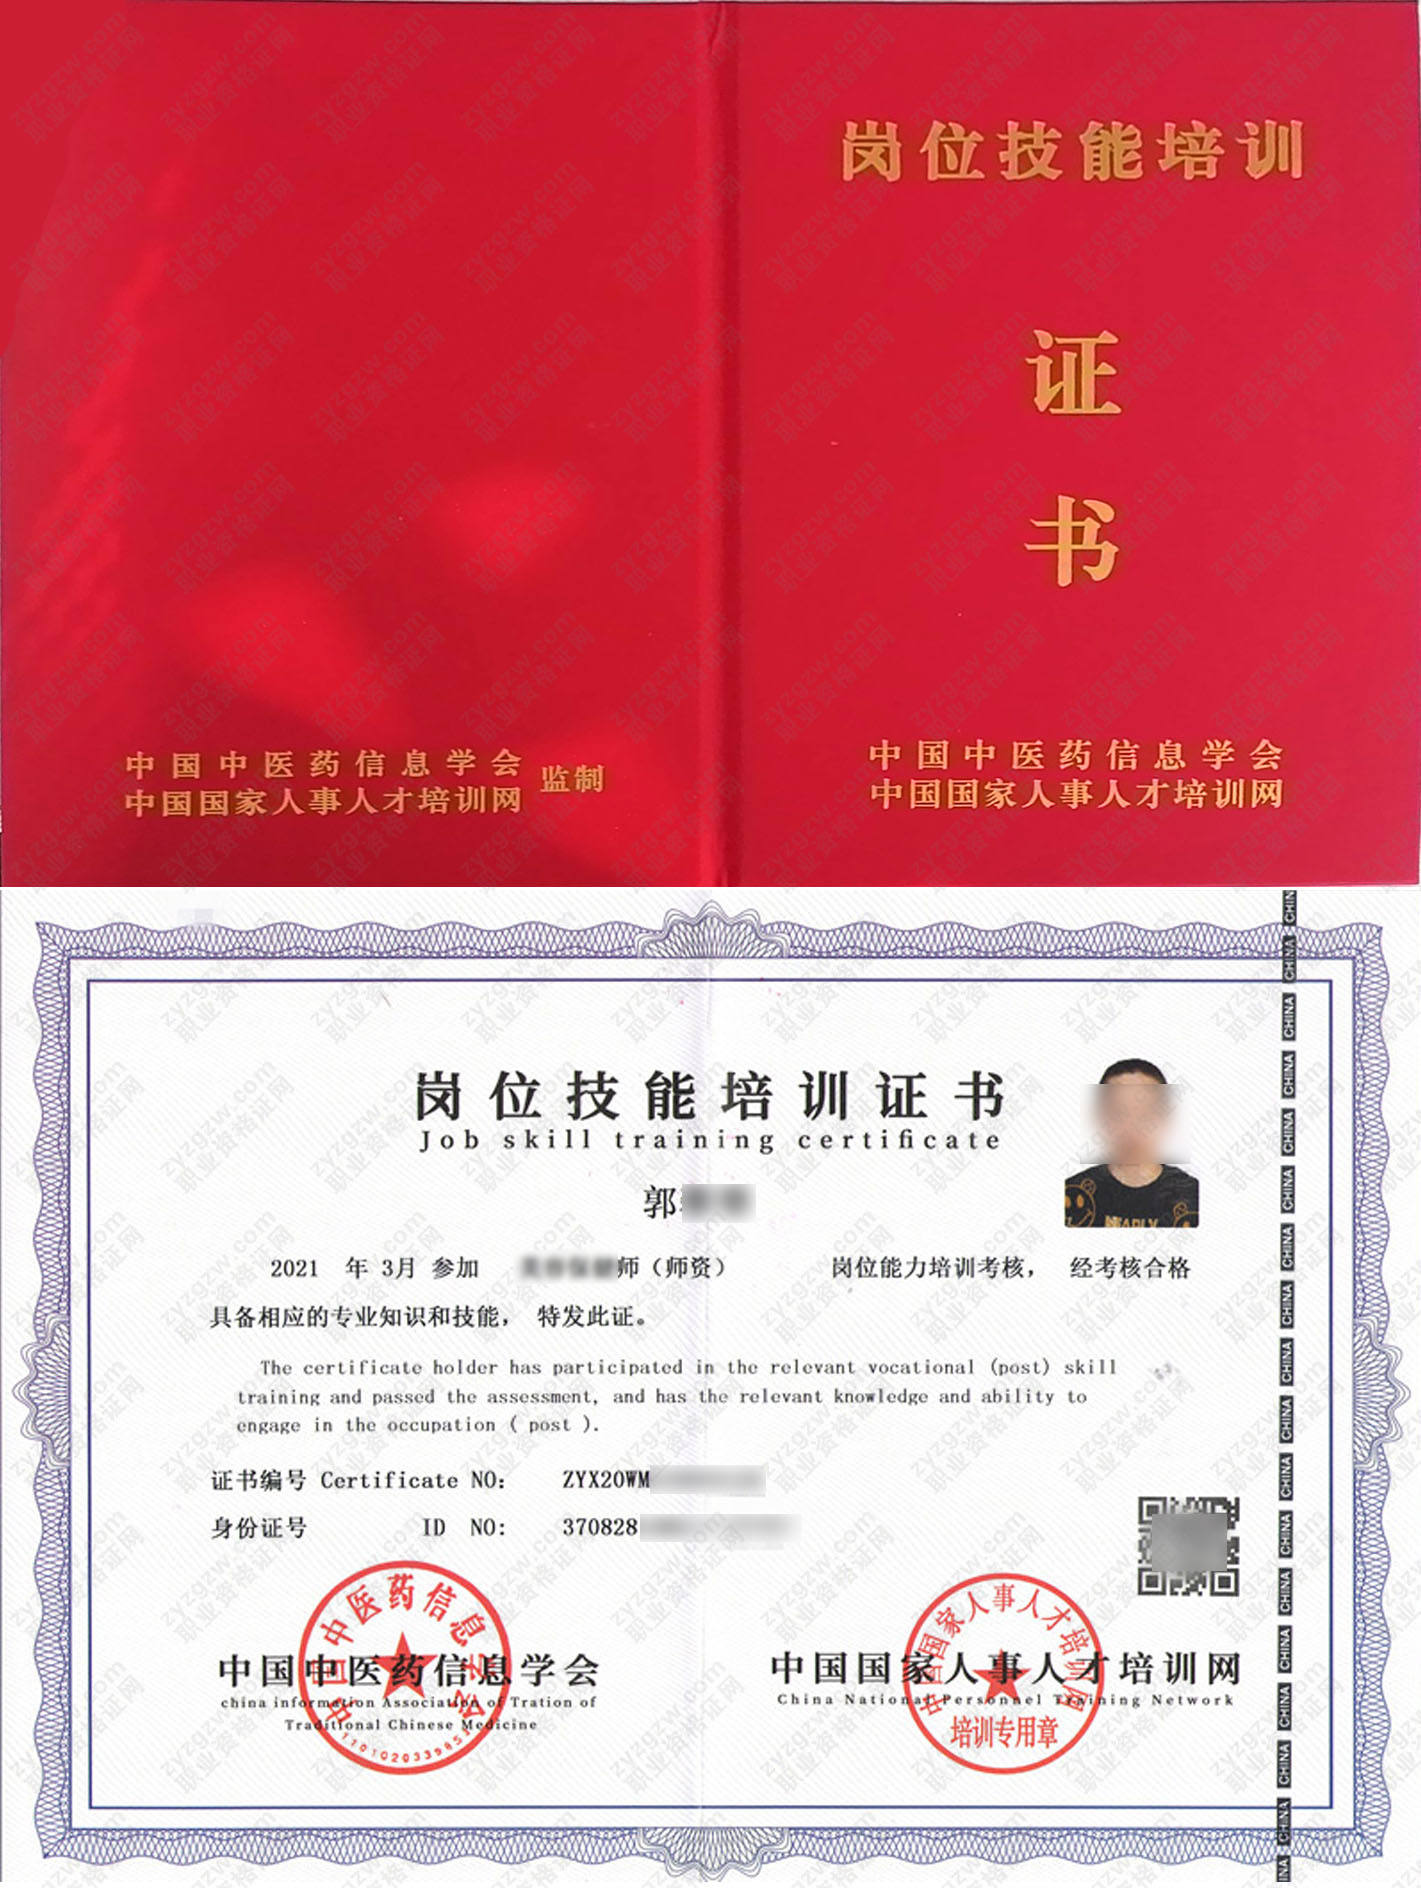 中国国家人事人才培训网 口腔种植师 岗位技能培训证书